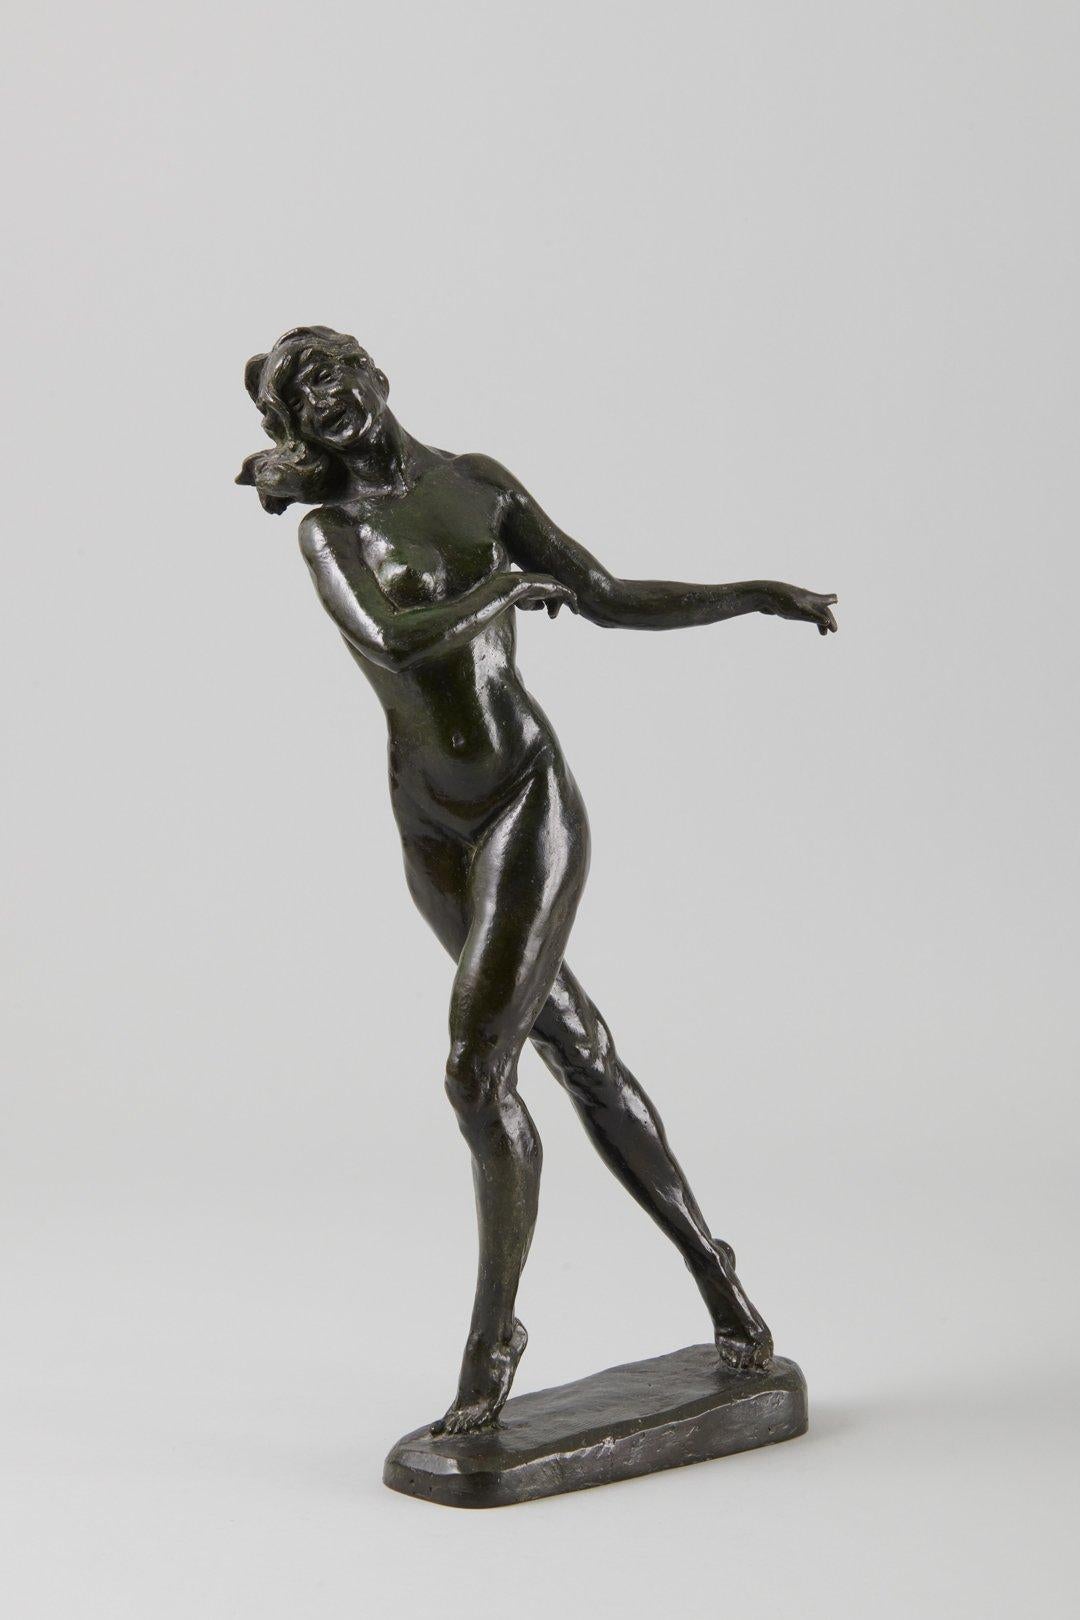 Aktspaziergang, Bronzeskulptur des frühen 20. Jahrhunderts, Künstler der Cleveland School – Sculpture von Max Kalish